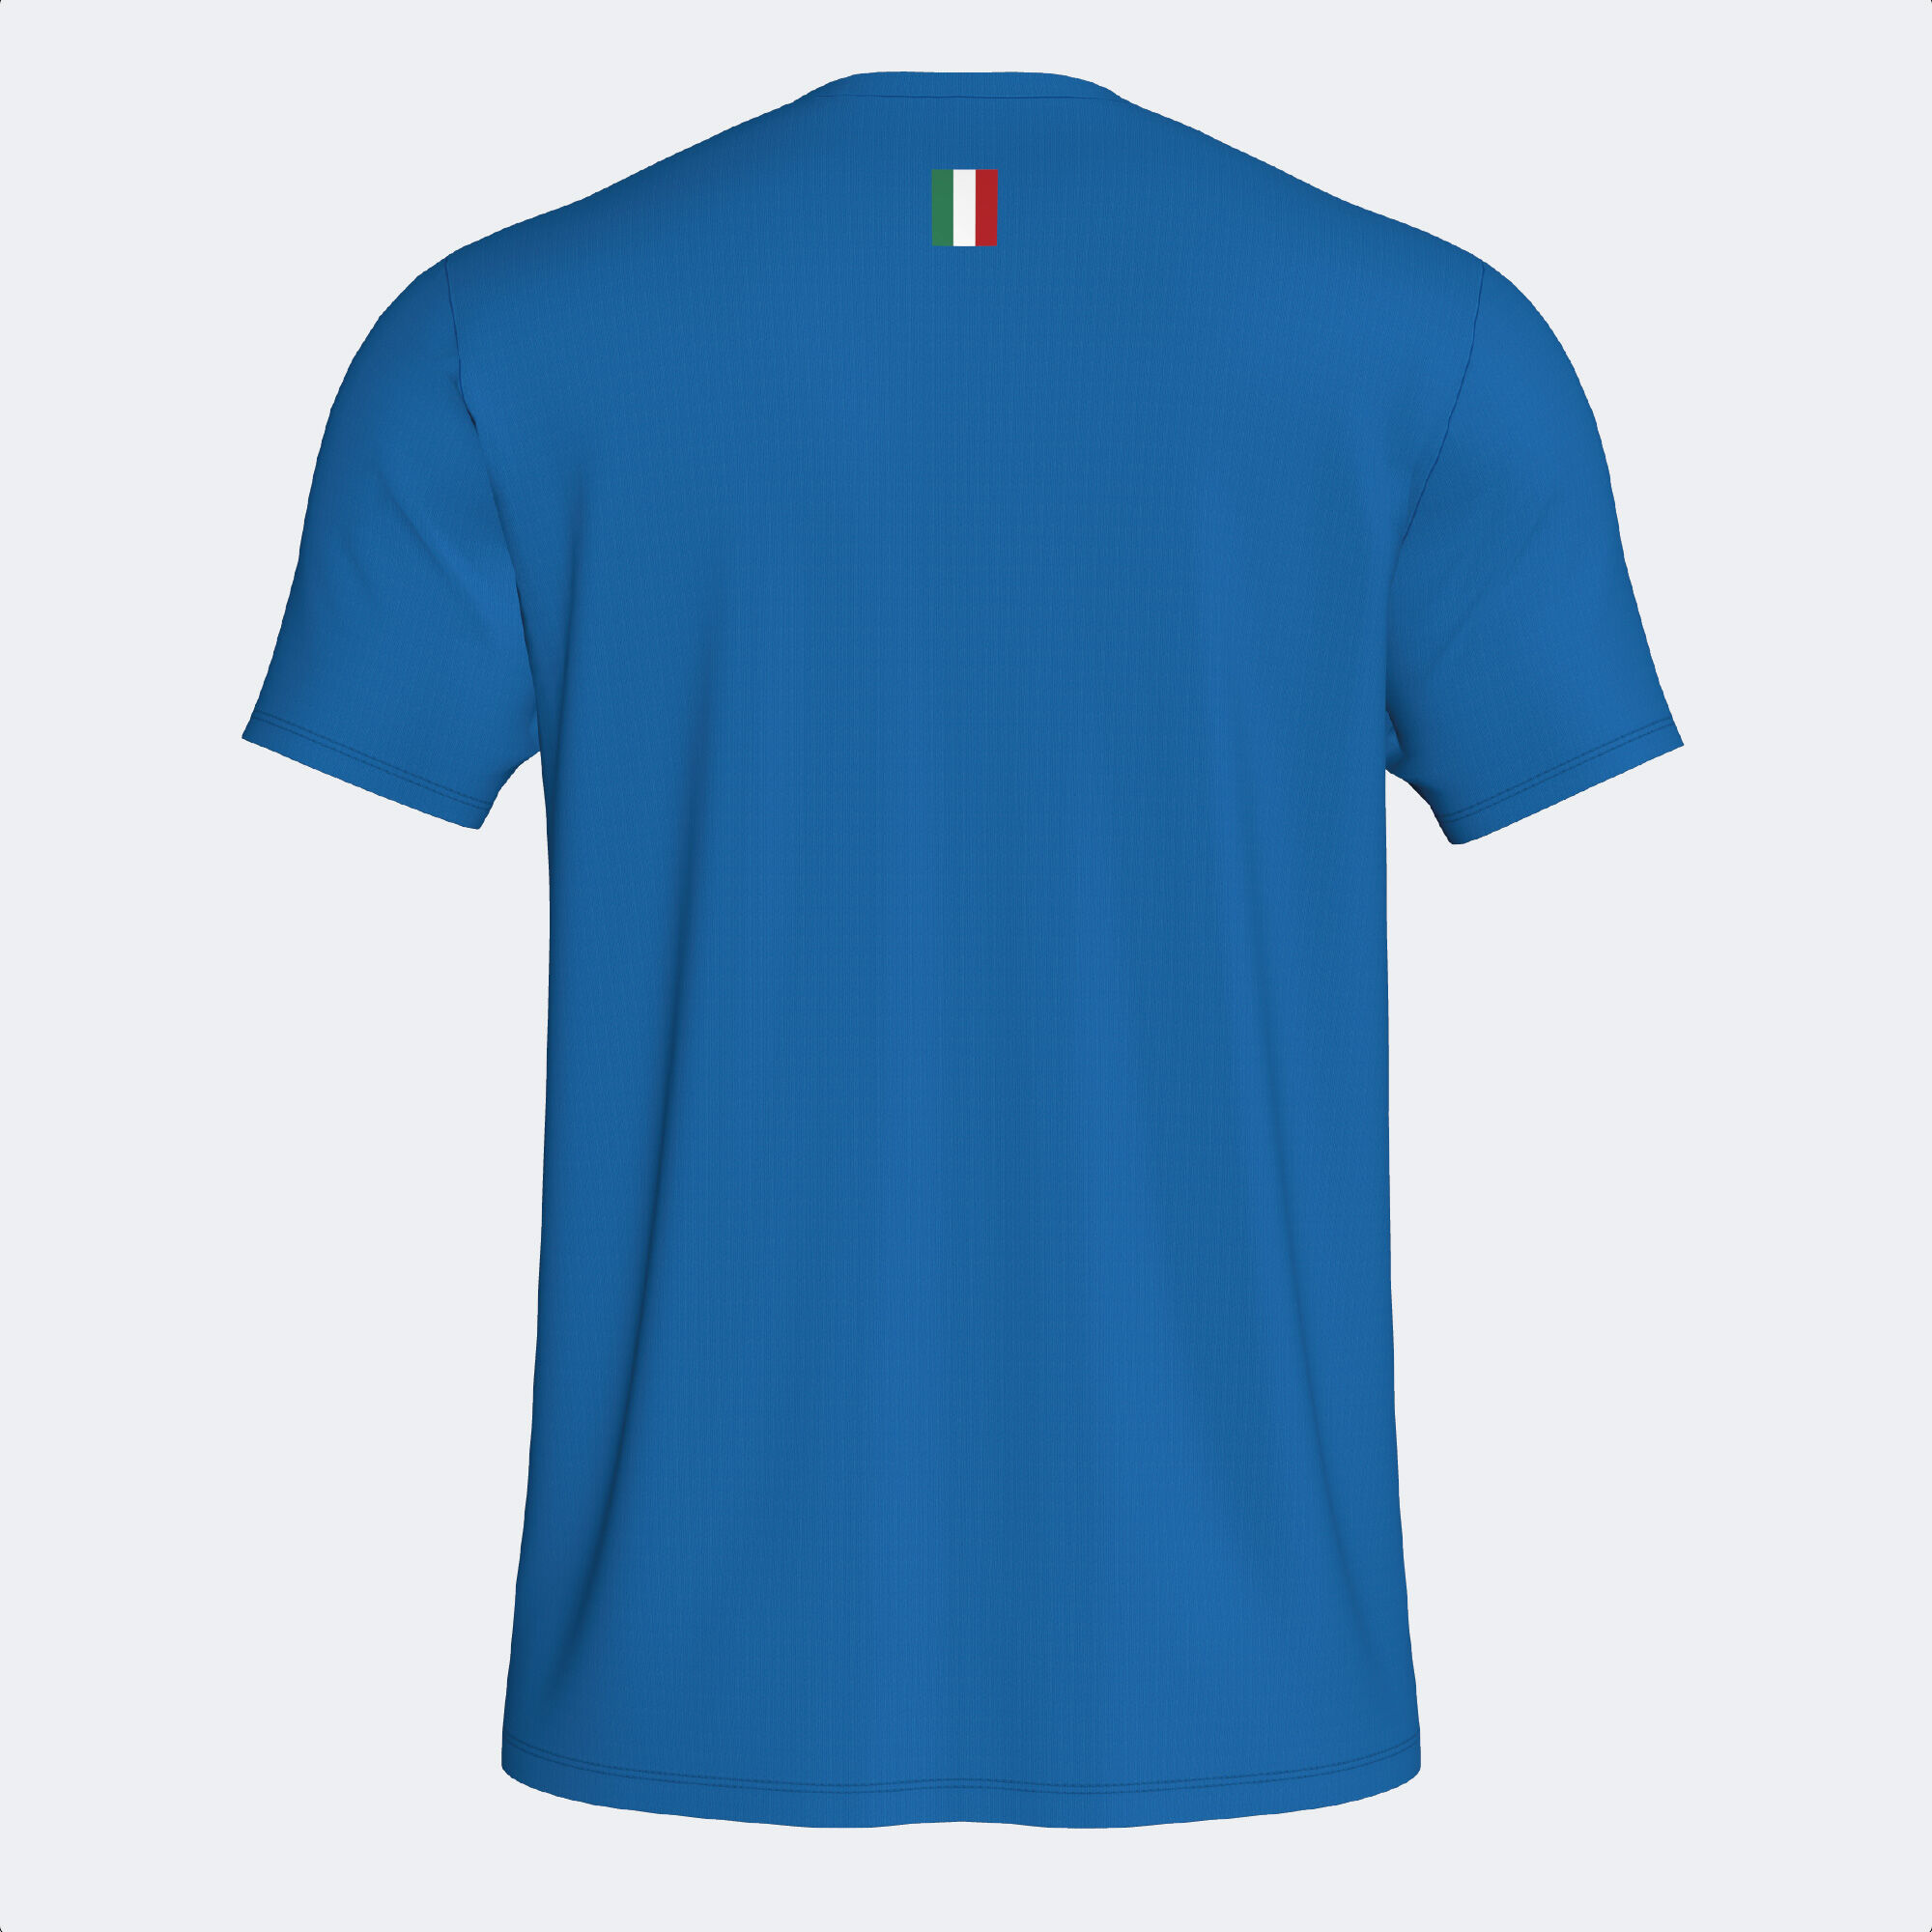 Camiseta manga corta Federación Italiana Tenis Y Pádel 23/24